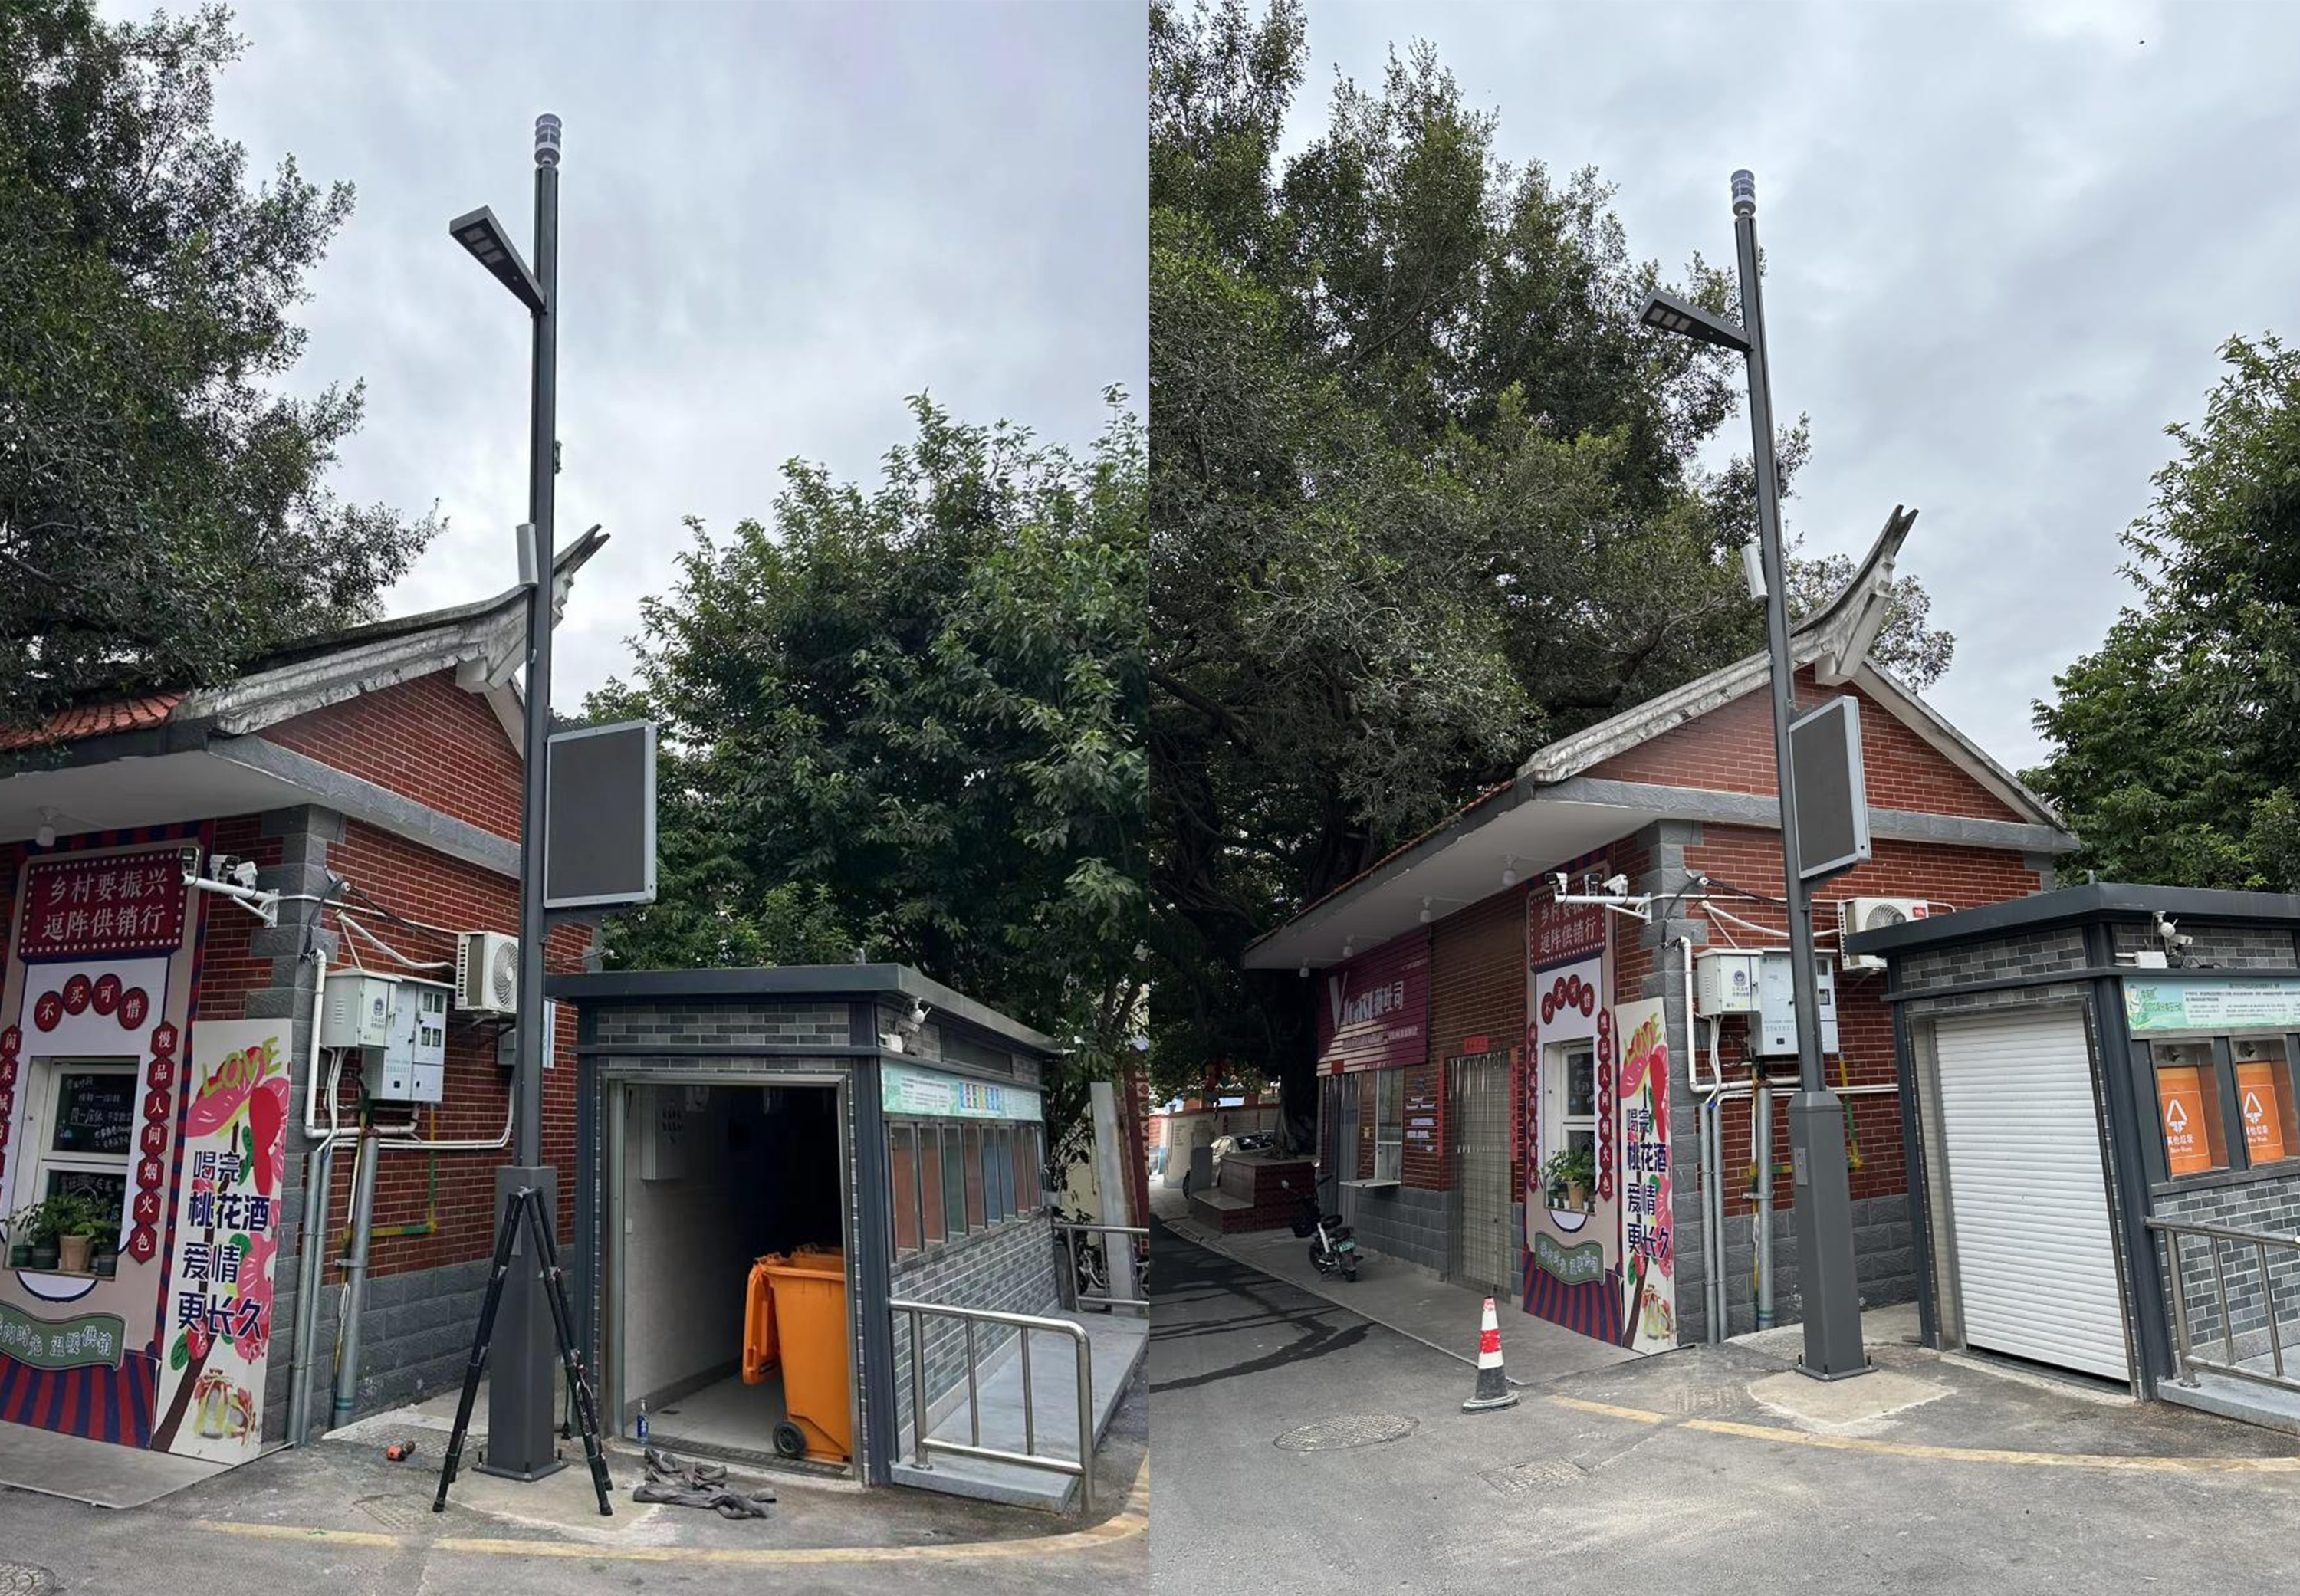 Our smart pole project in Xiamen Fujian China